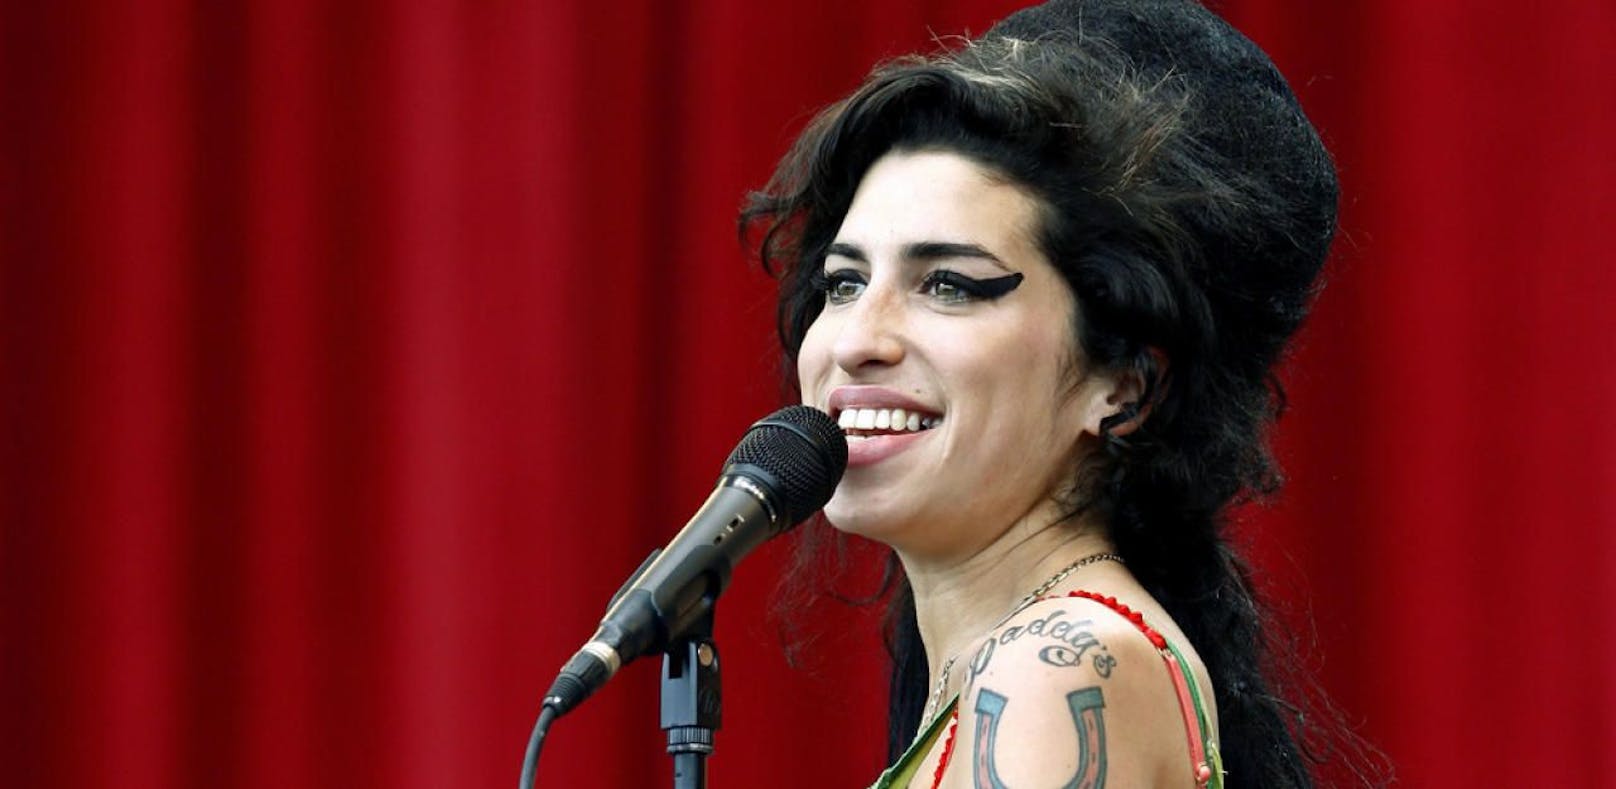 Museum stellt Kot von Amy Winehouse aus